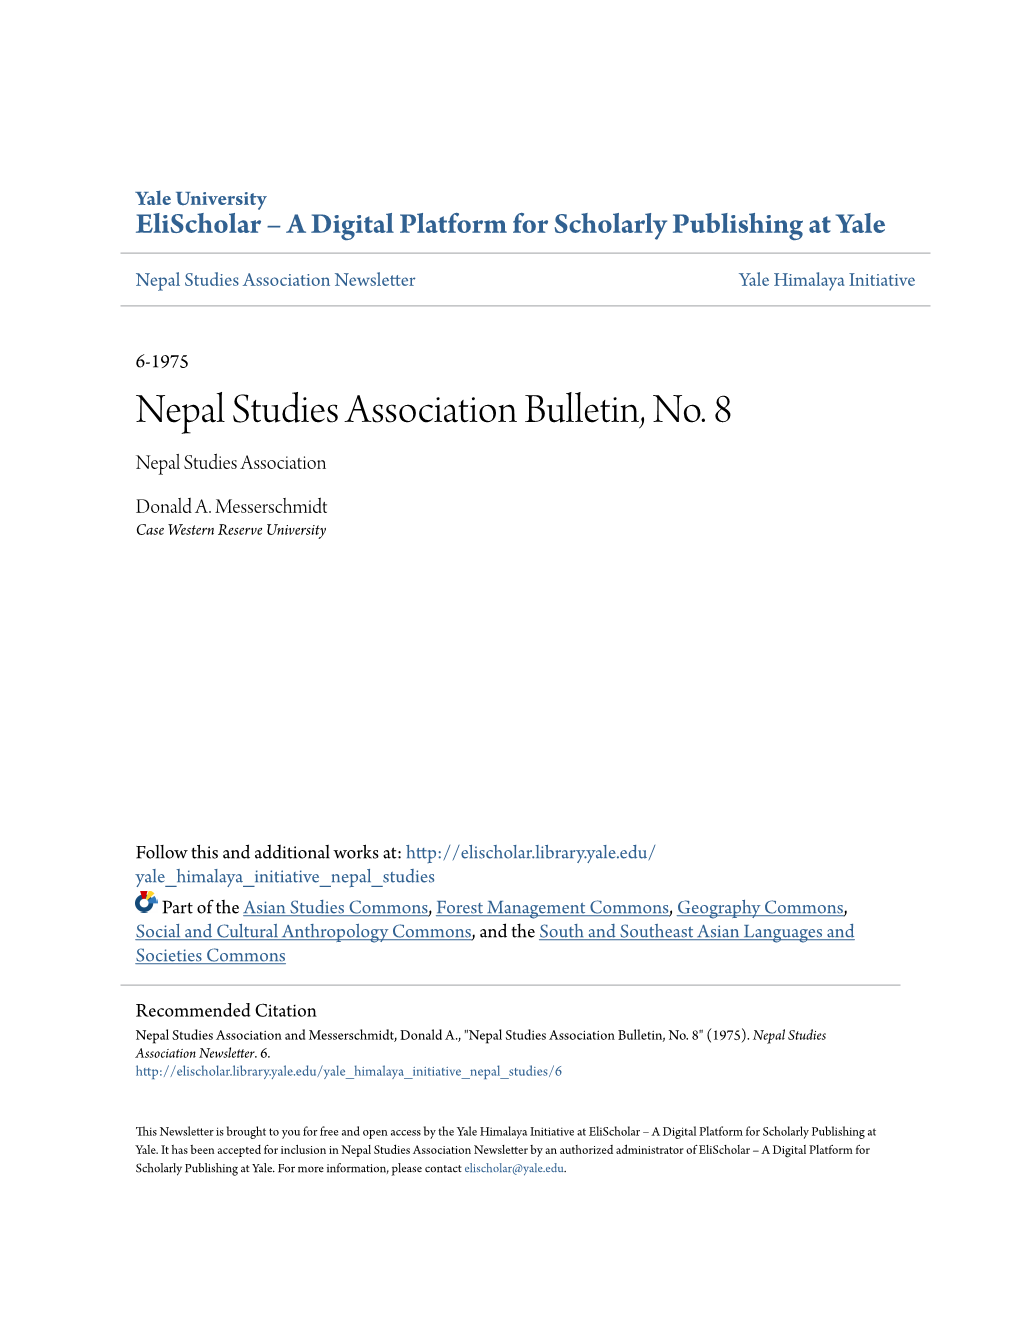 Nepal Studies Association Bulletin, No. 8 Nepal Studies Association